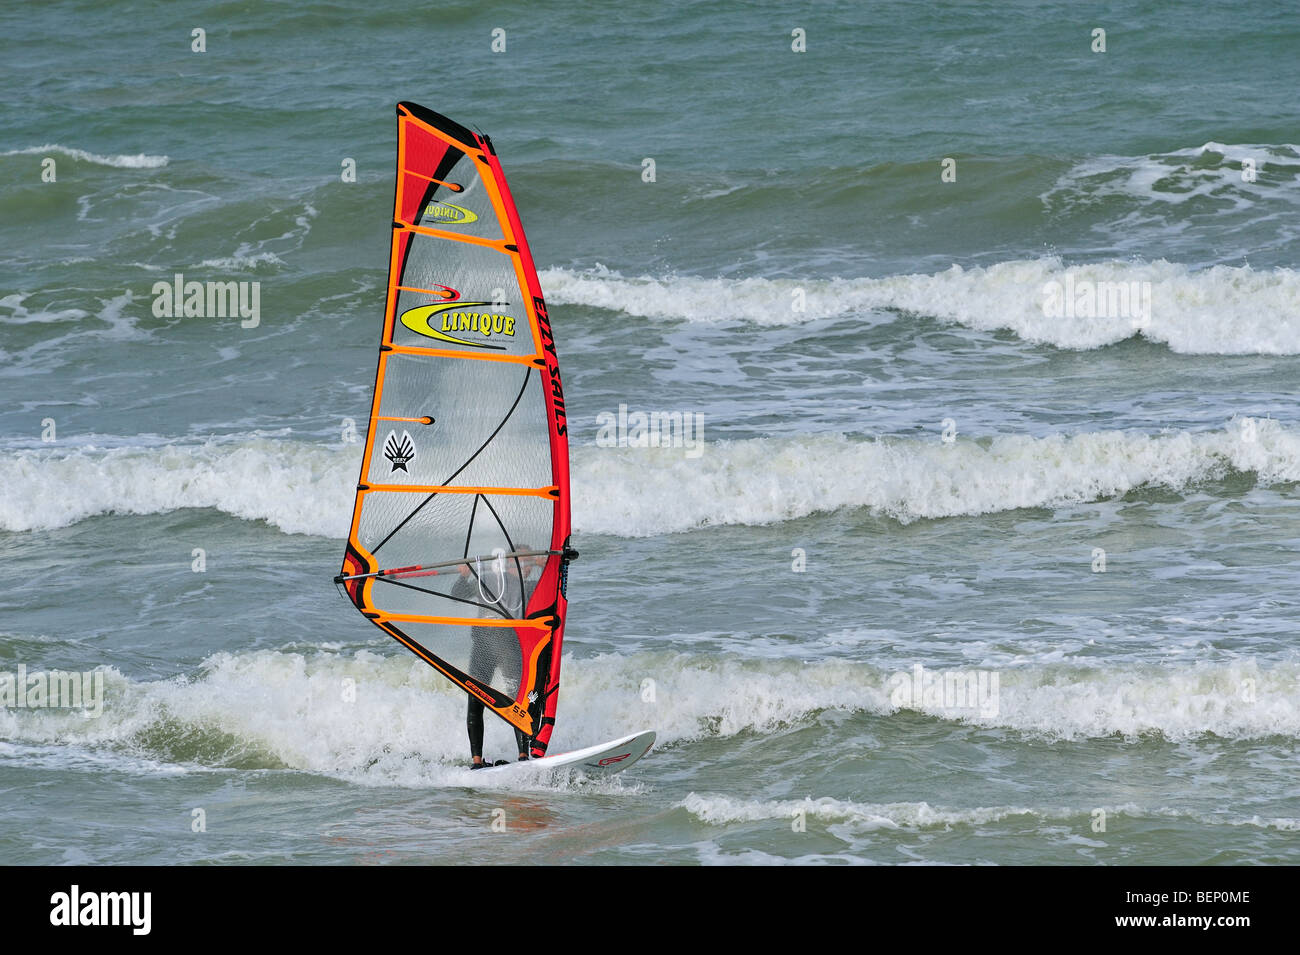 Windsurf muta in barca a vela nel surf in mare durante la tempesta meteo Foto Stock